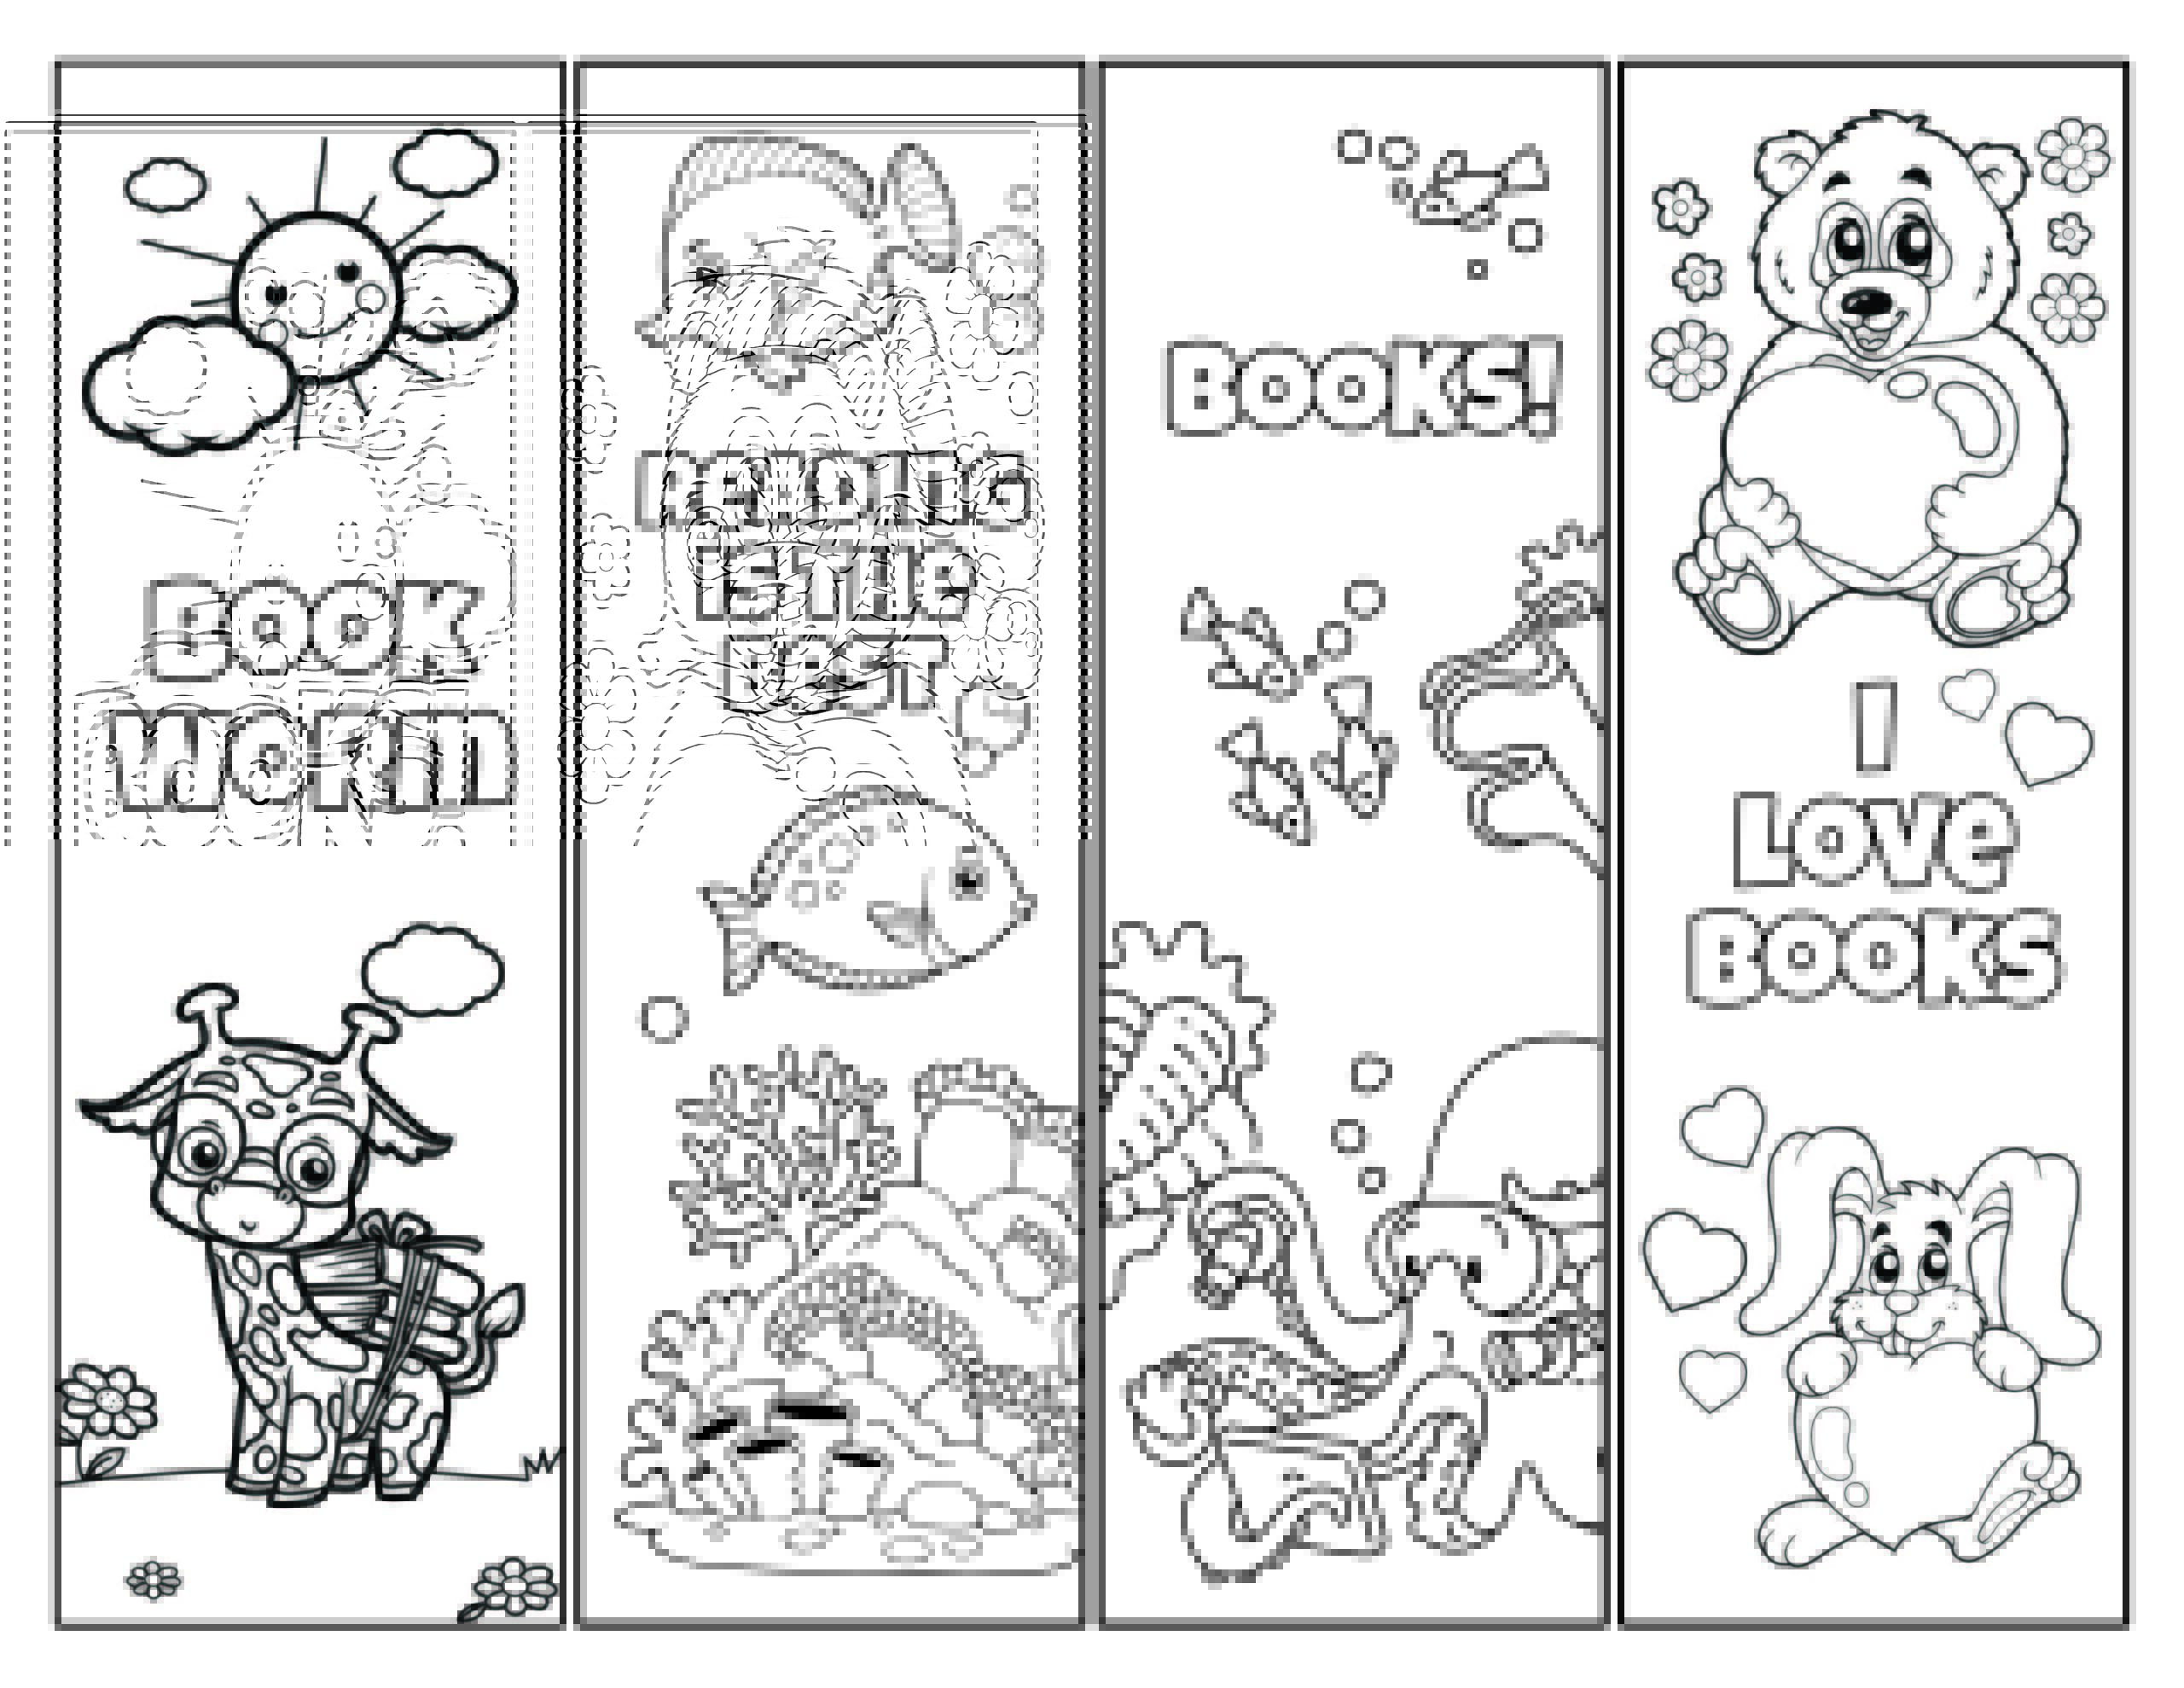 Free Printable Bookmarks For Kids To Color - Printable Blog